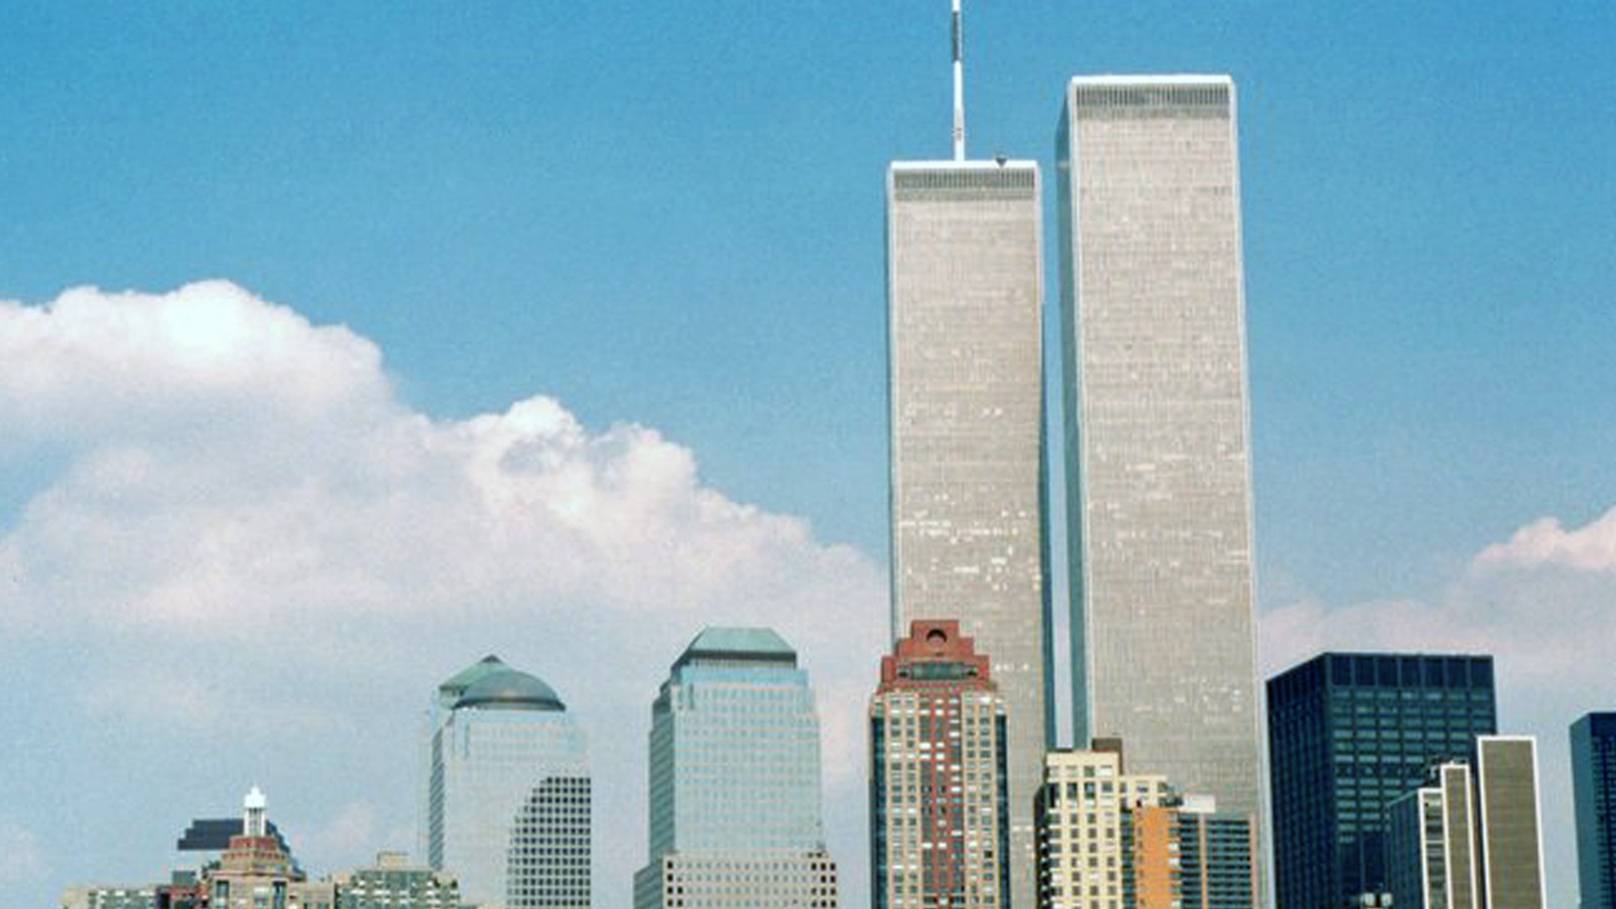 One Week after September 11